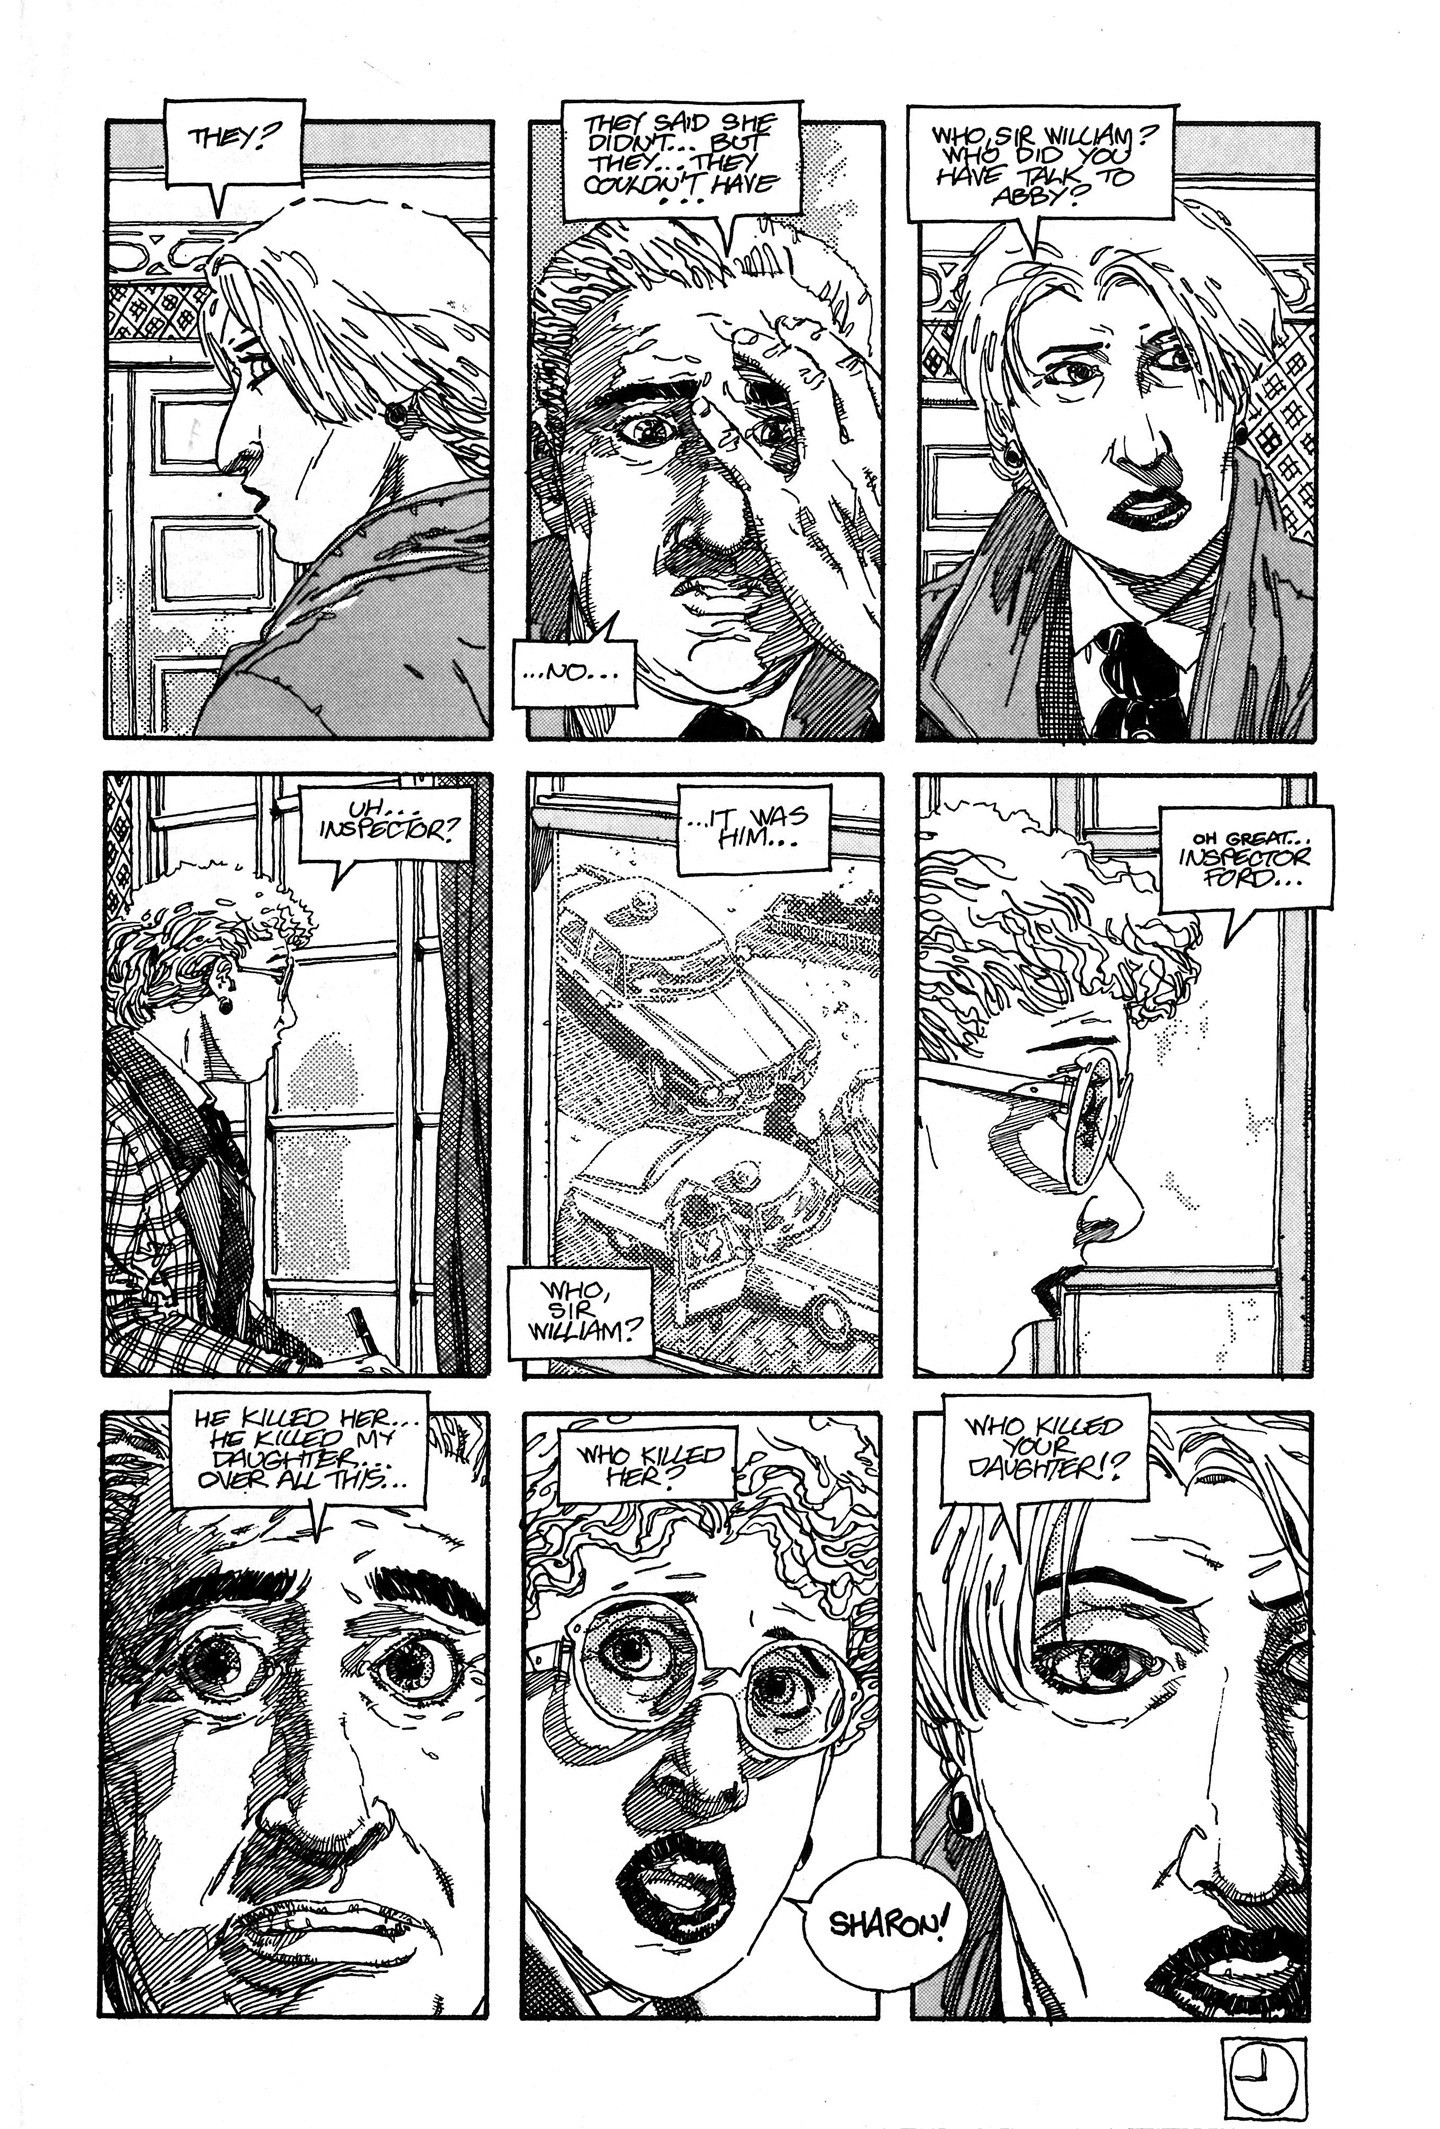 Read online Baker Street comic -  Issue #10 - 22